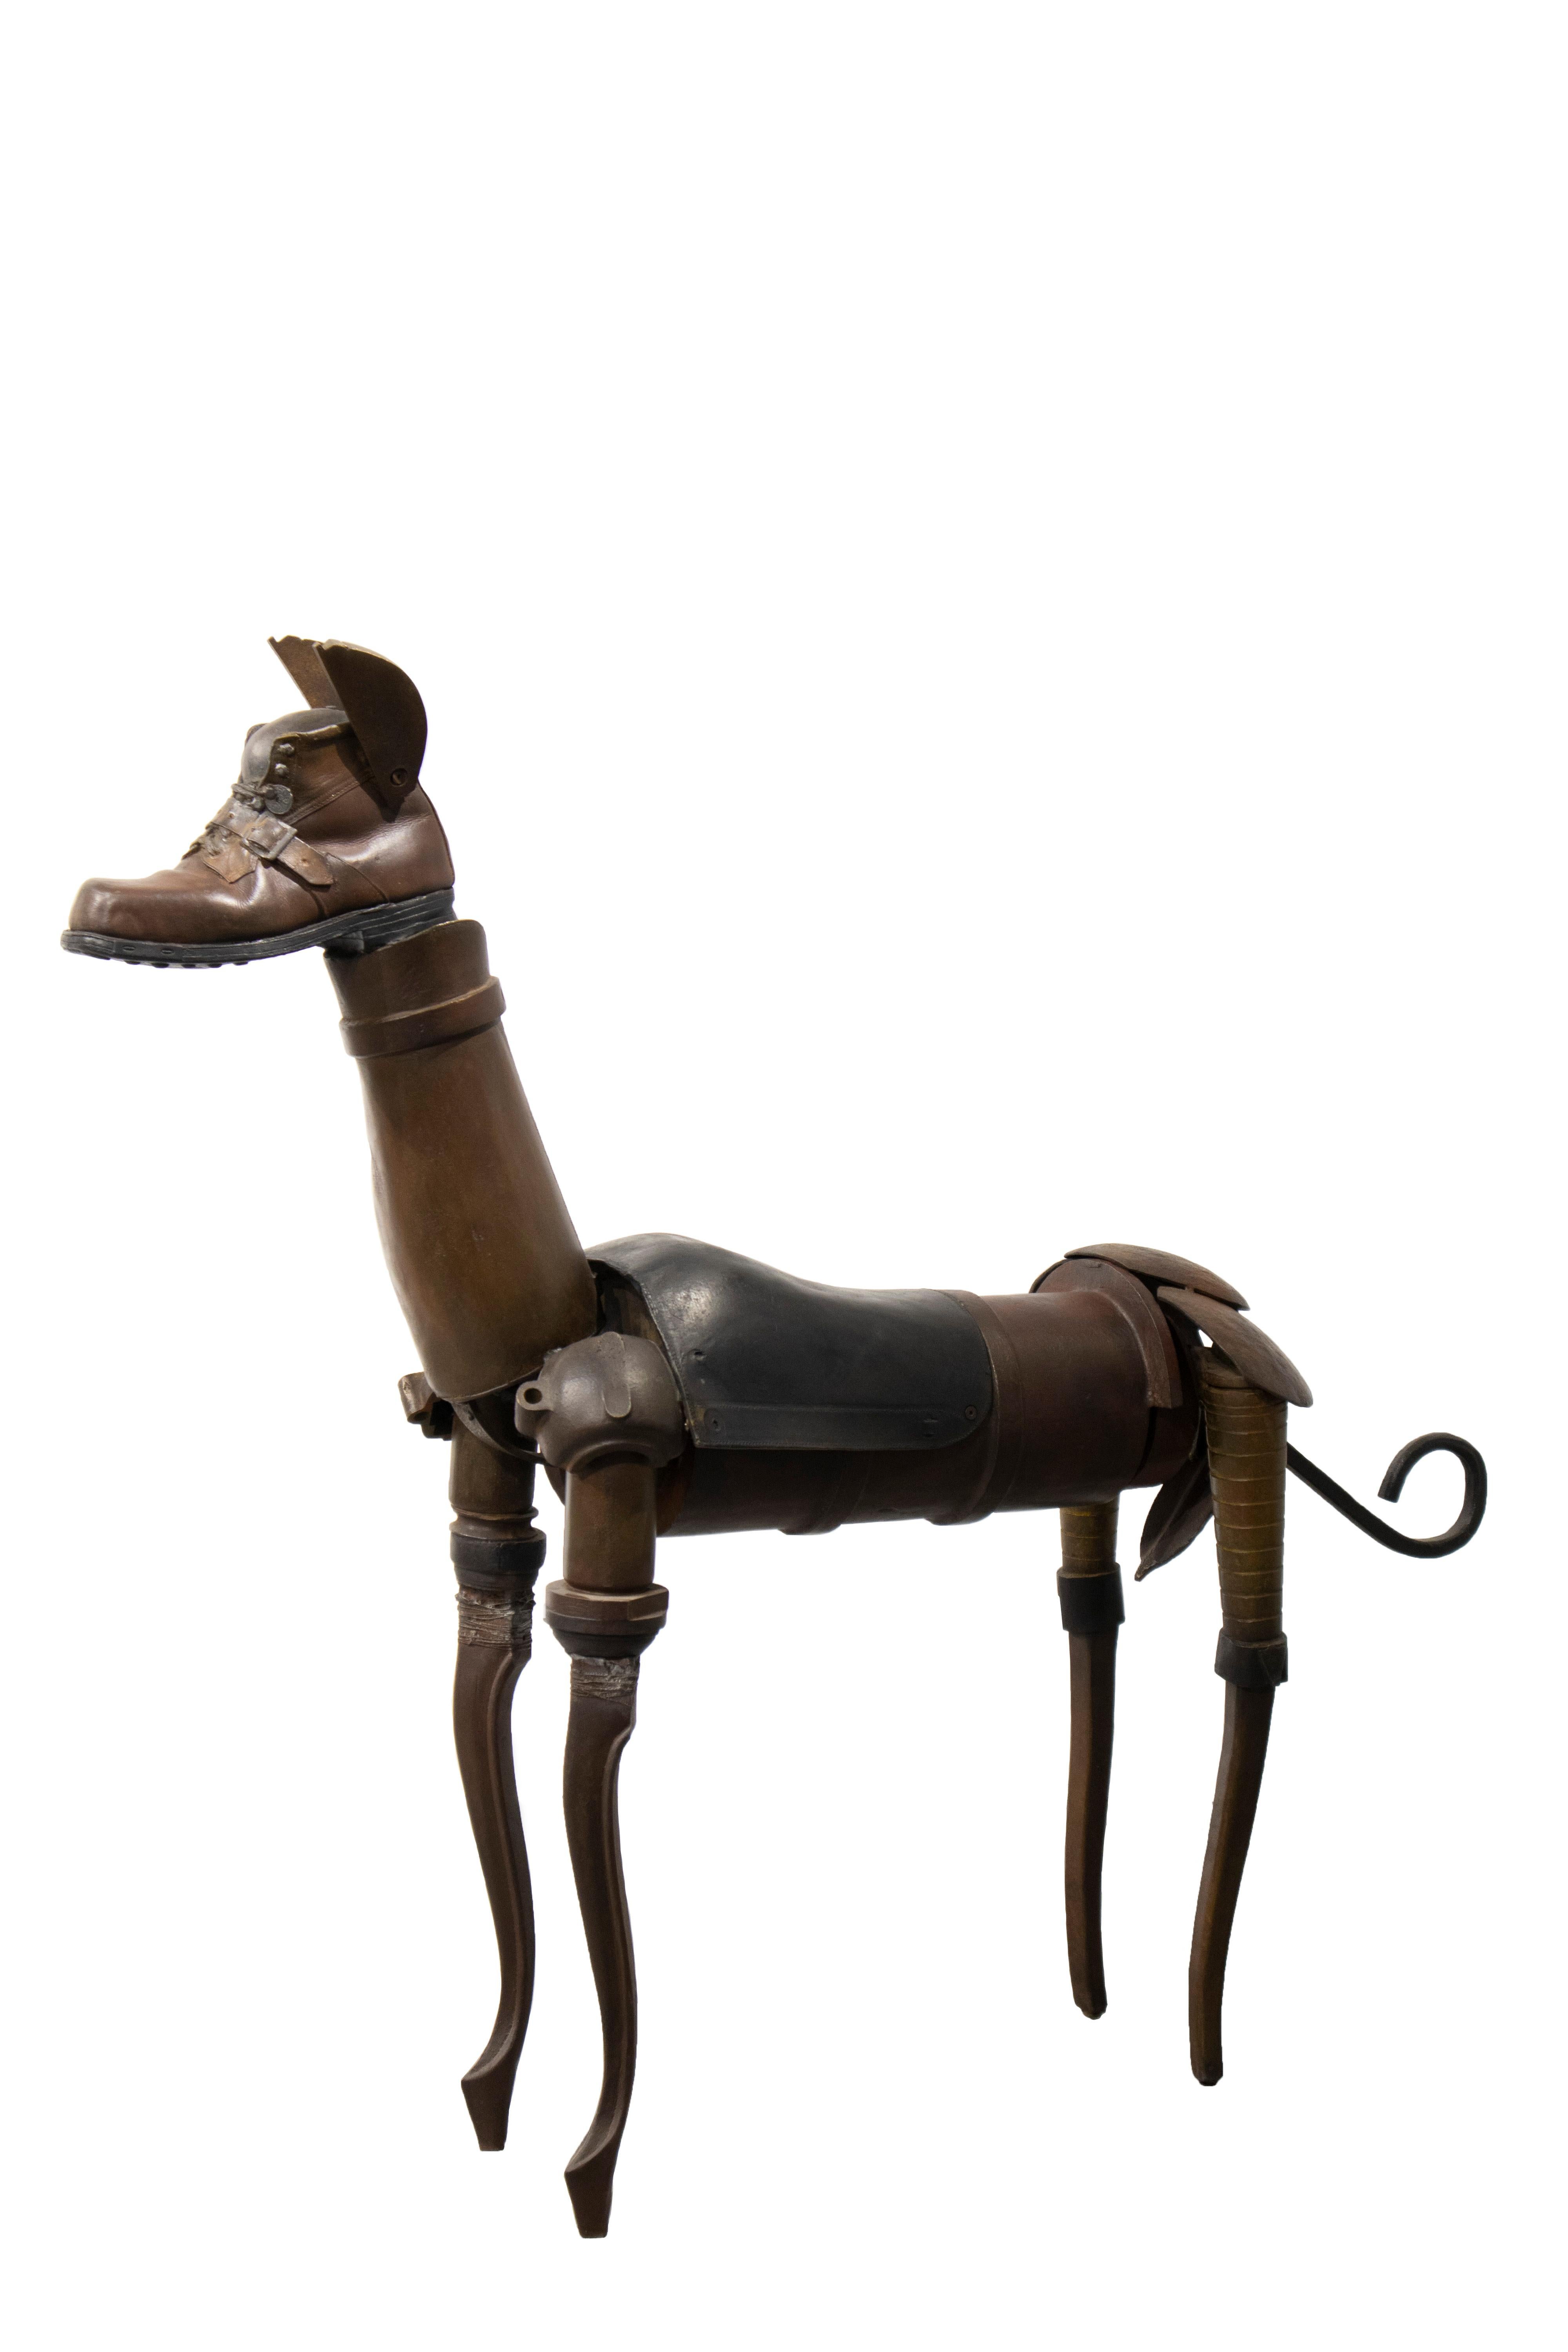 Miquel Aparici Figurative Sculpture - Perro De Bronce - 21st Century, Contemporary Sculpture, Figurative, Bronze, Dog